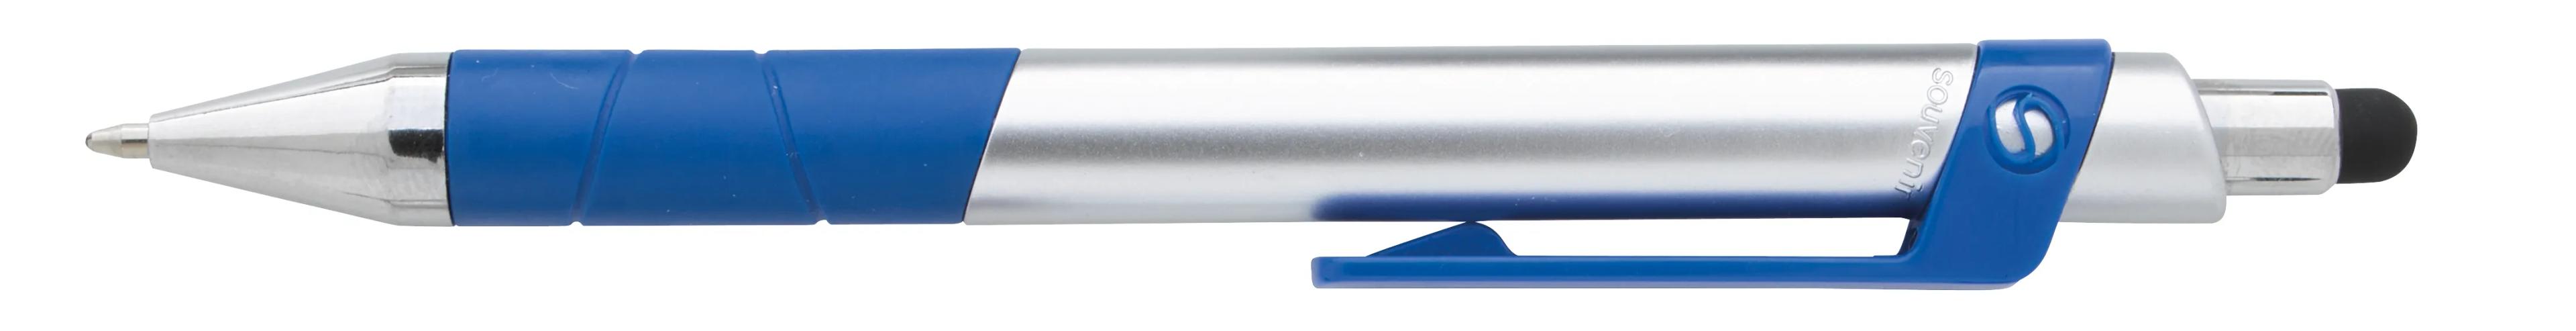 Souvenir® Rize Stylus Pen 8 of 28